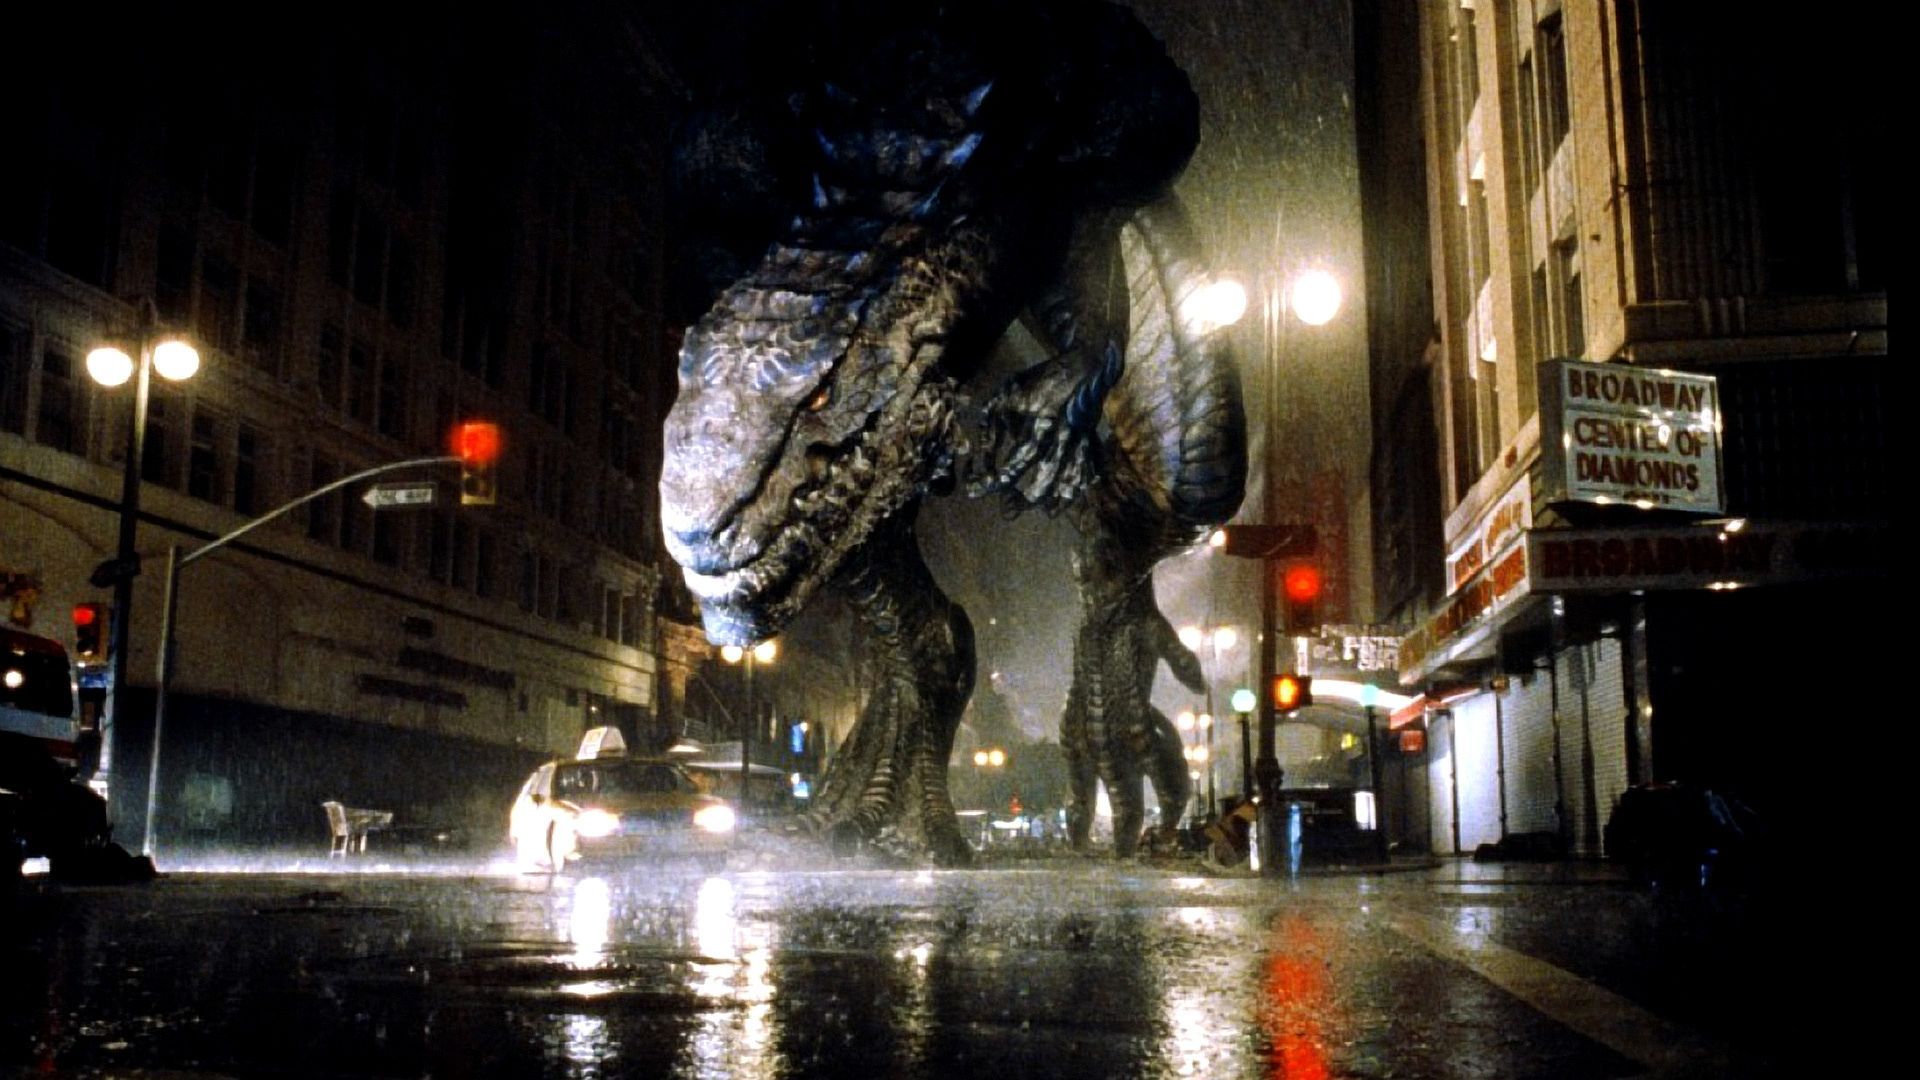 Zilla roams free on an open street in Godzilla 1998.